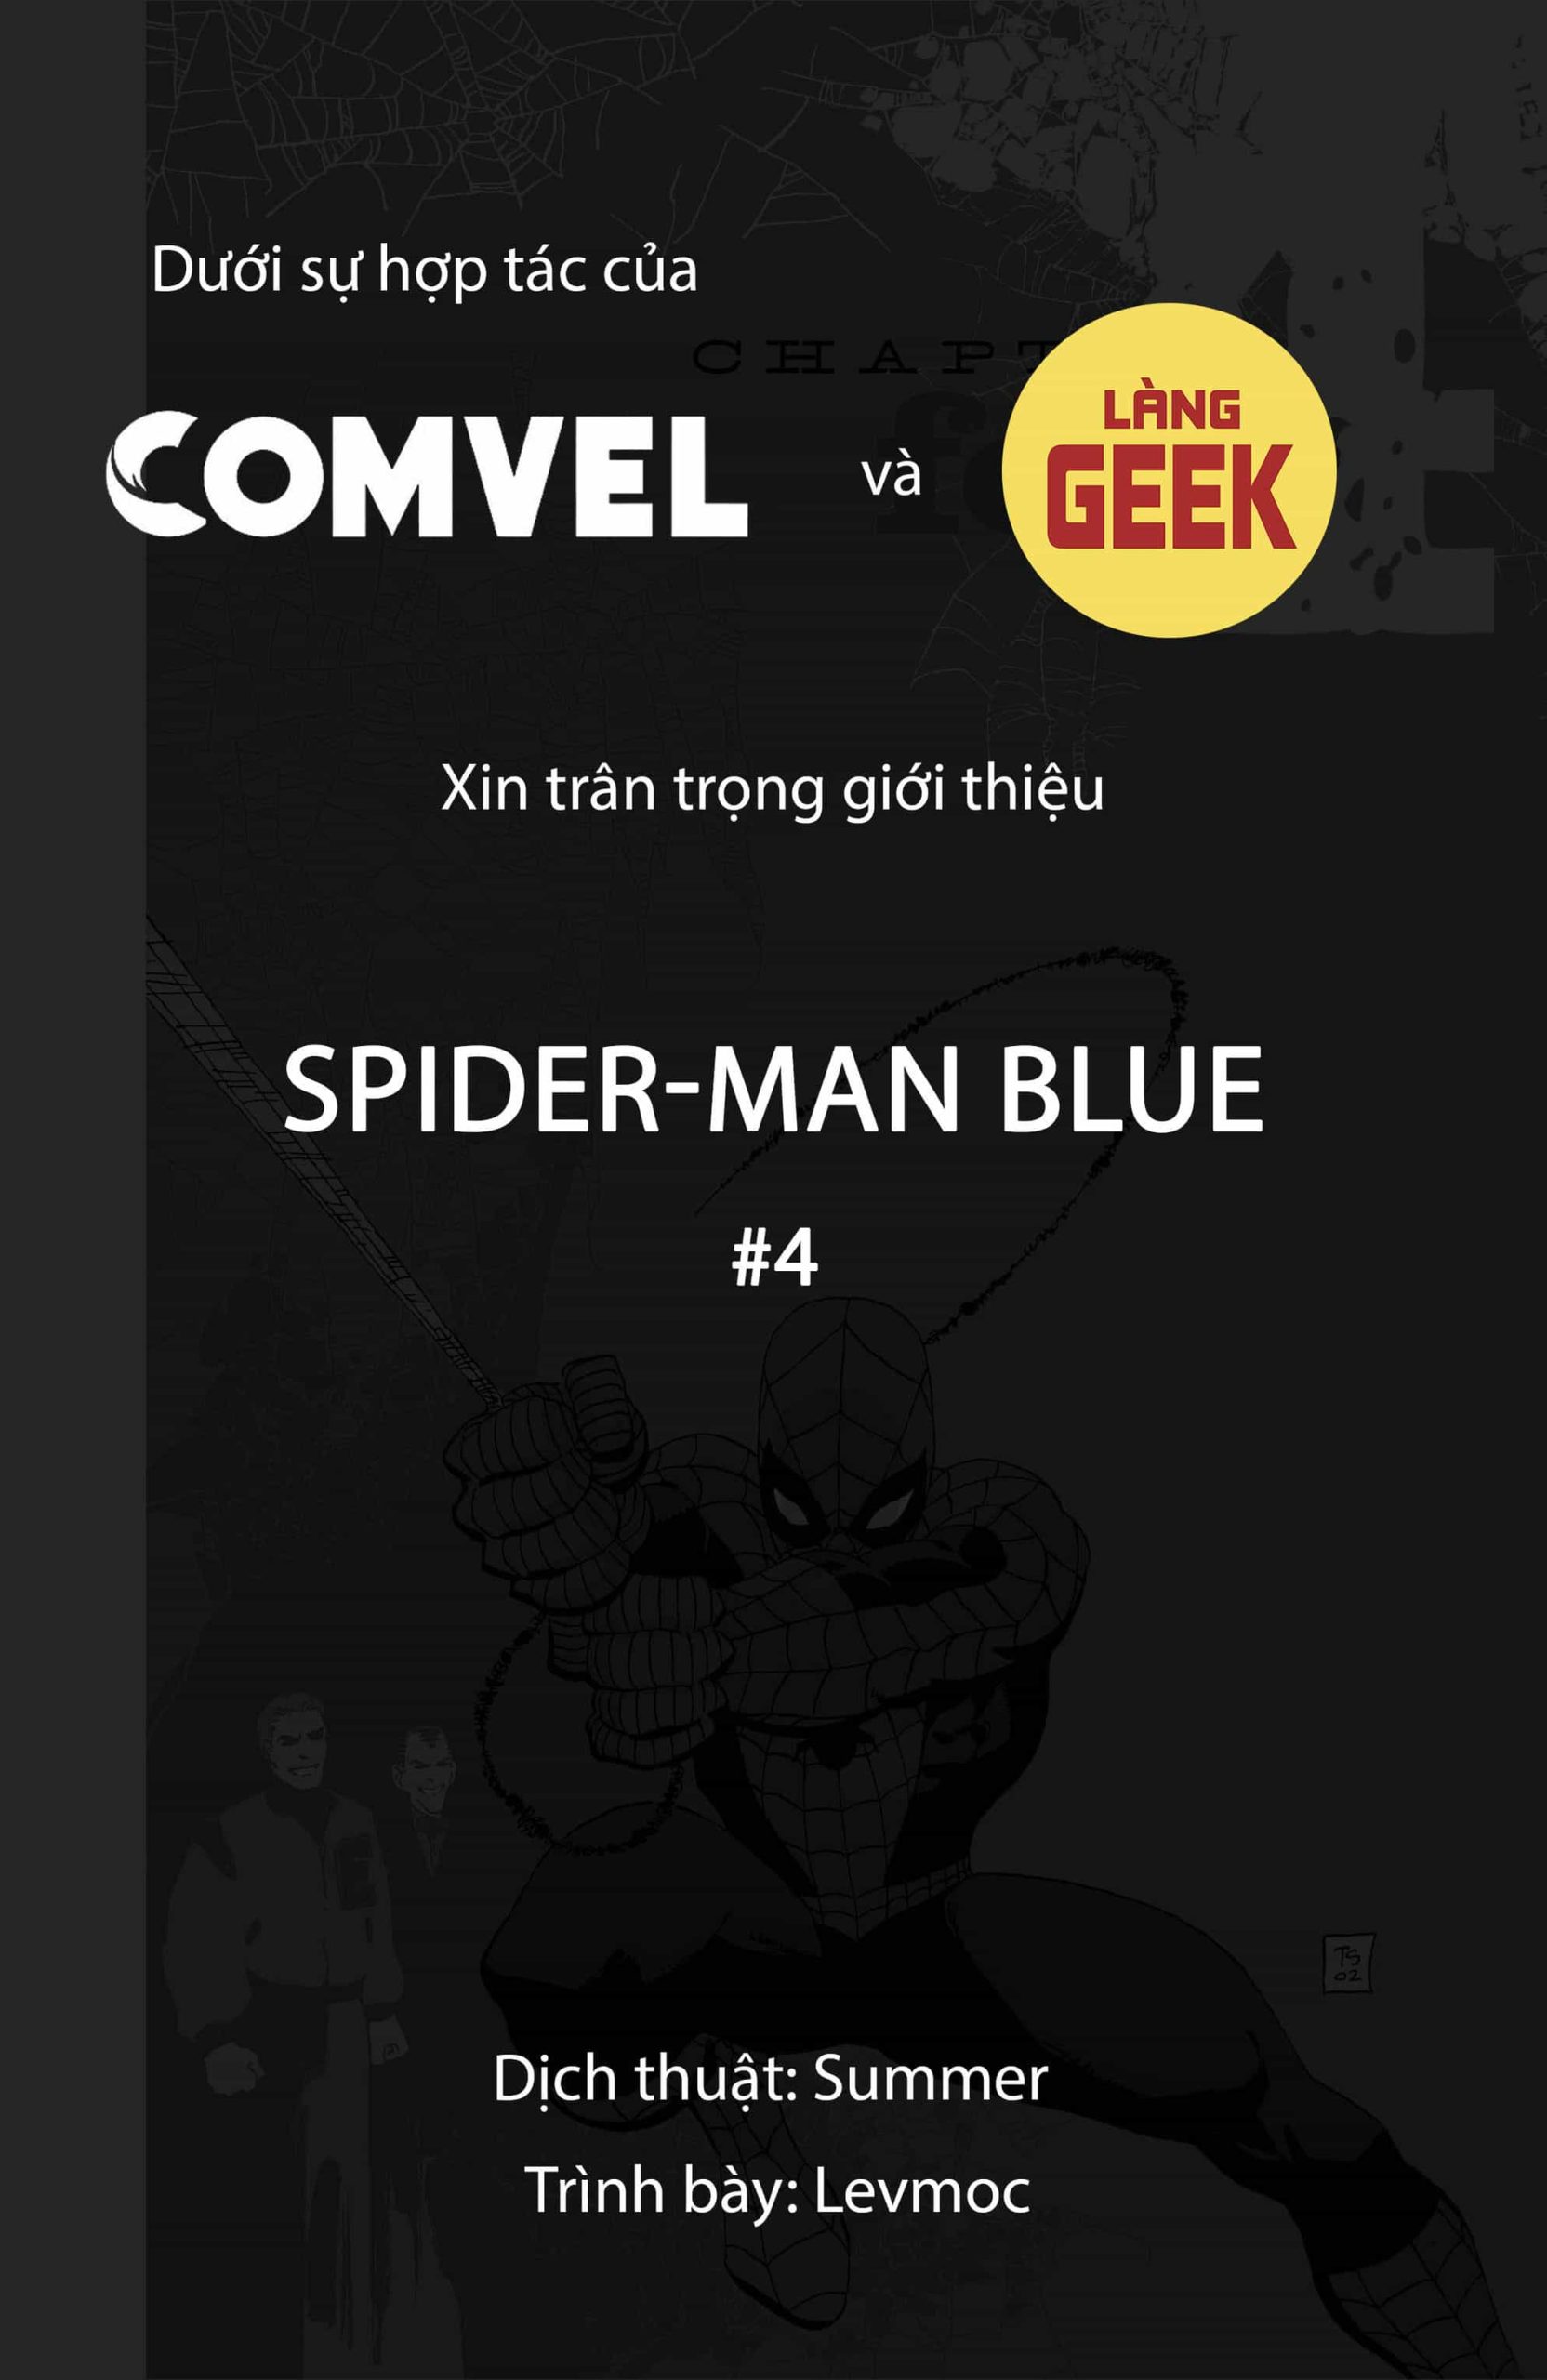 https://langgeek.net/wp-content/webpc-passthru.php?src=https://langgeek.net/wp-content/uploads/2022/11/Spider-Man-Blue-075-1-scaled.jpg&nocache=1